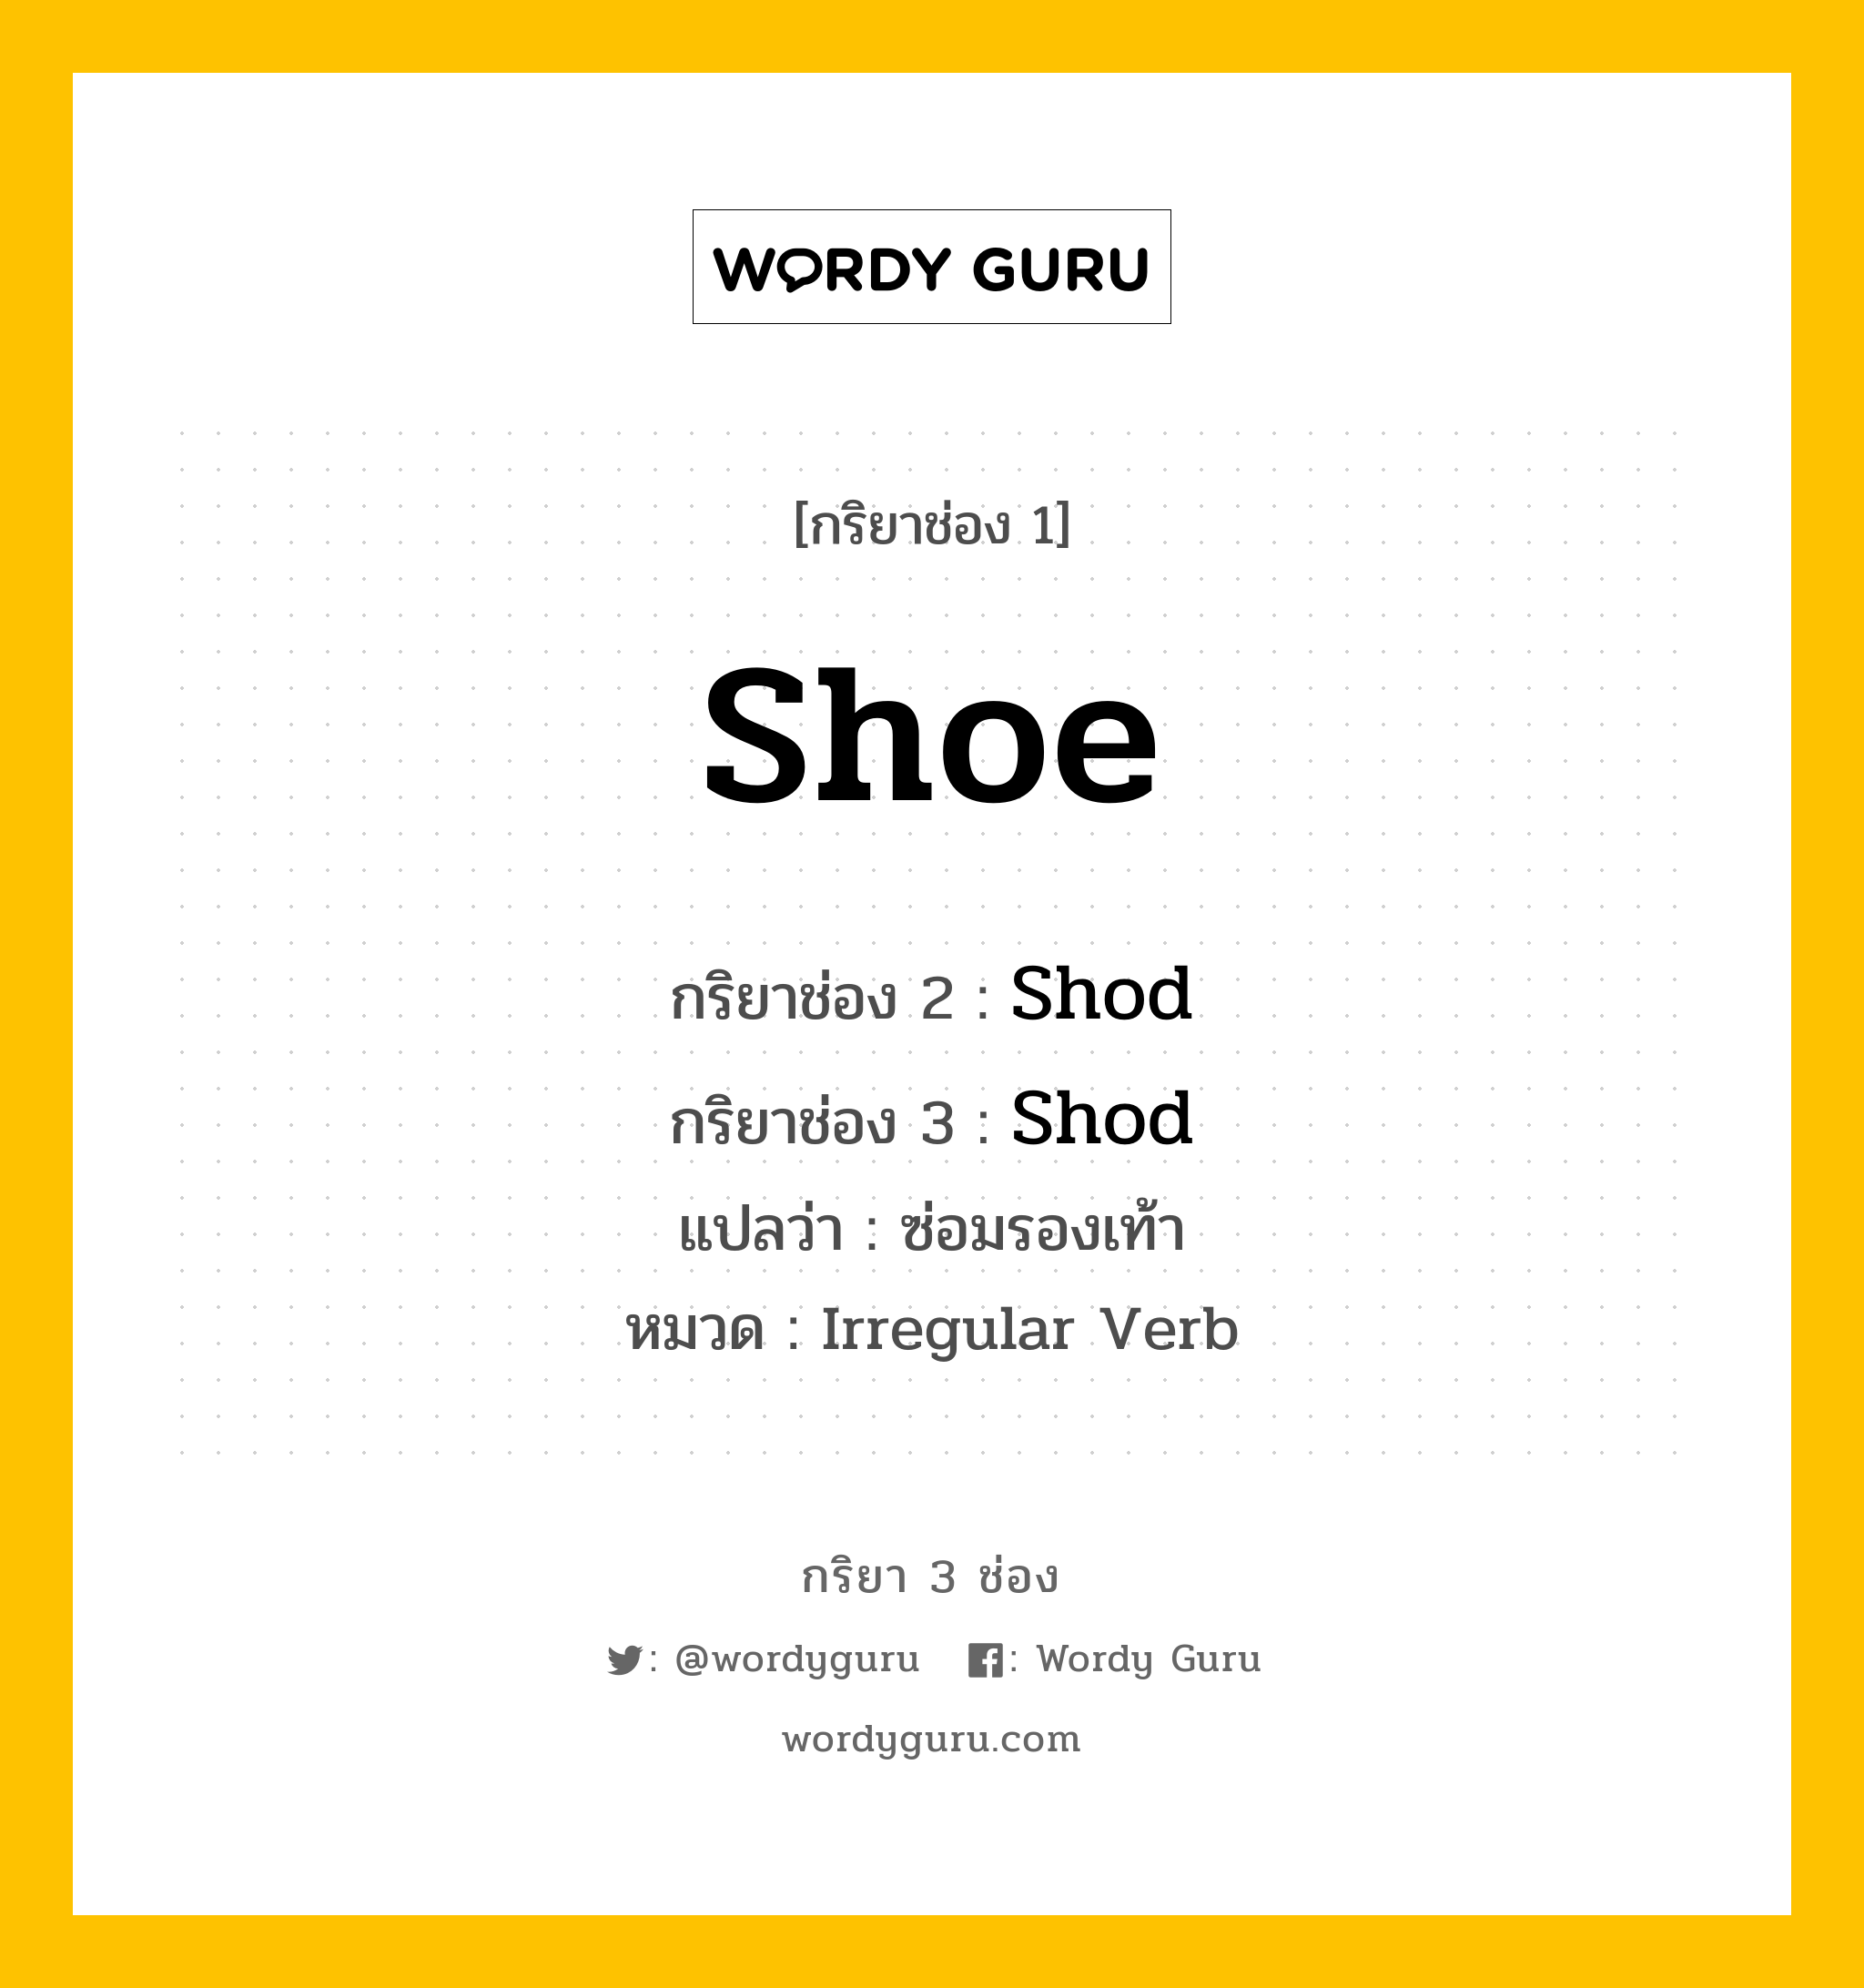 กริยา 3 ช่อง: Shoe ช่อง 2 Shoe ช่อง 3 คืออะไร, กริยาช่อง 1 Shoe กริยาช่อง 2 Shod กริยาช่อง 3 Shod แปลว่า ซ่อมรองเท้า หมวด Irregular Verb มีหลายแบบ y หมวด Irregular Verb